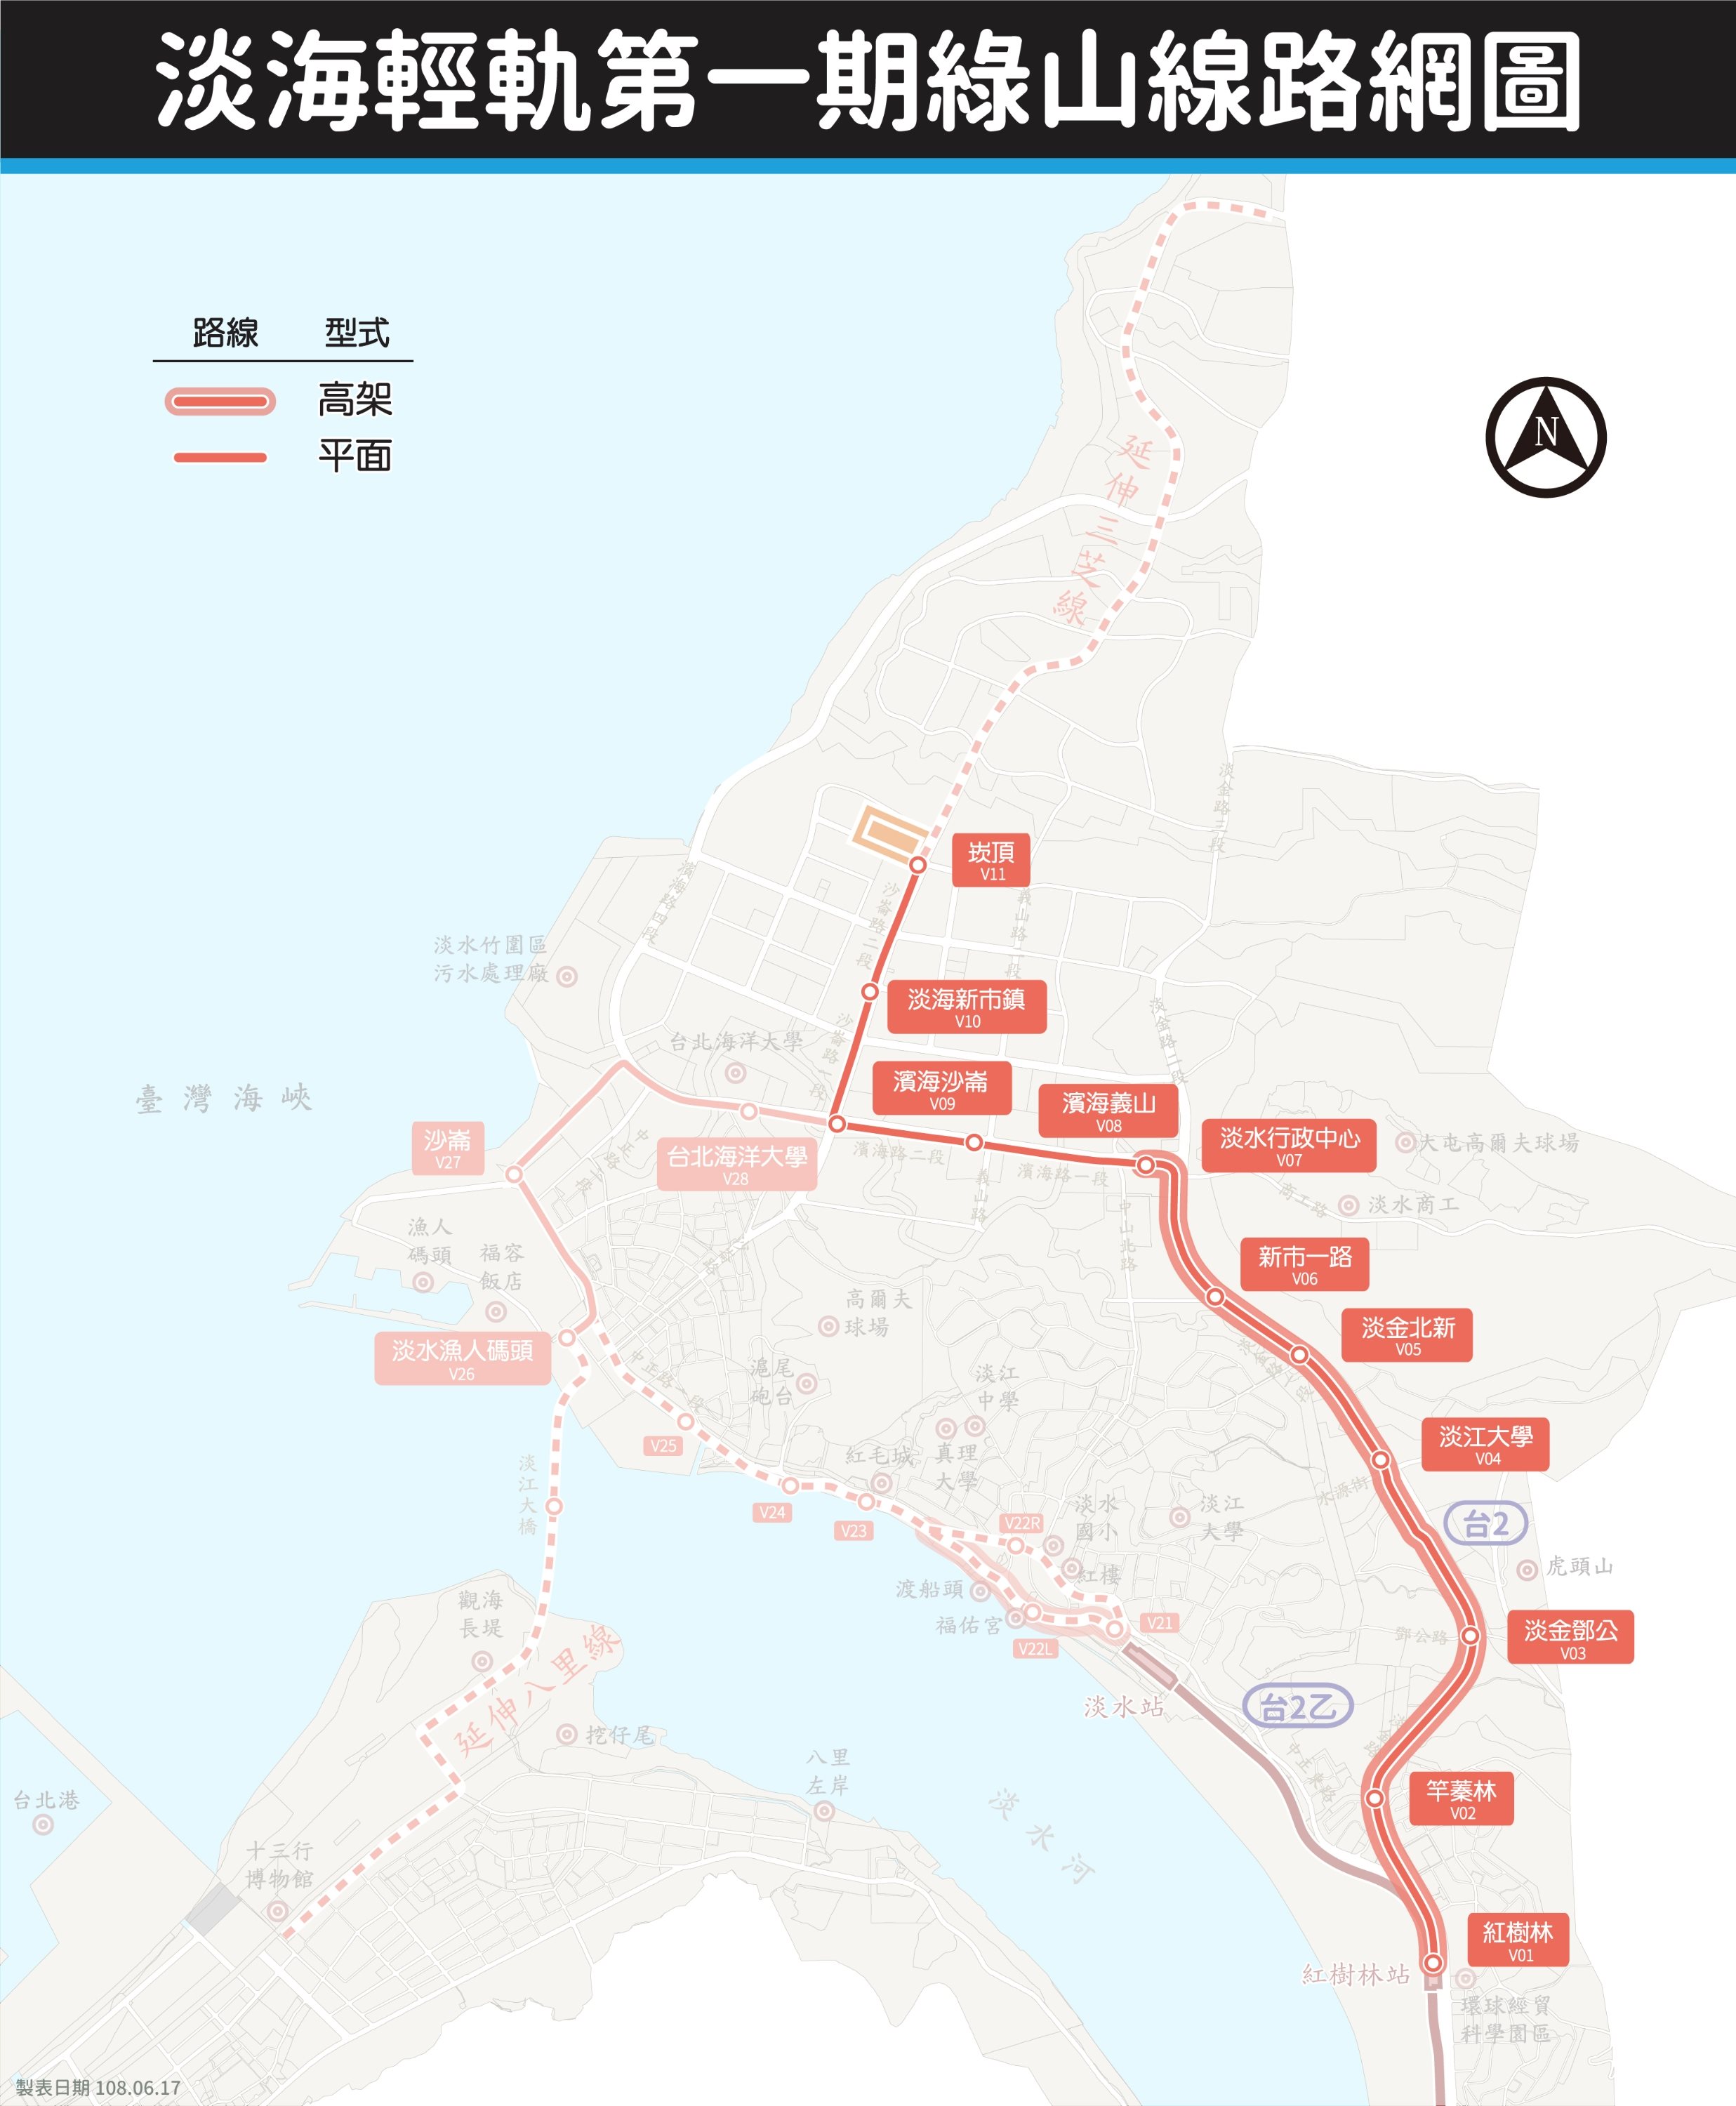 淡海輕軌綠山線(從紅樹林站到崁頂站)共計11站點，各站點說明可參考下方工程站點。